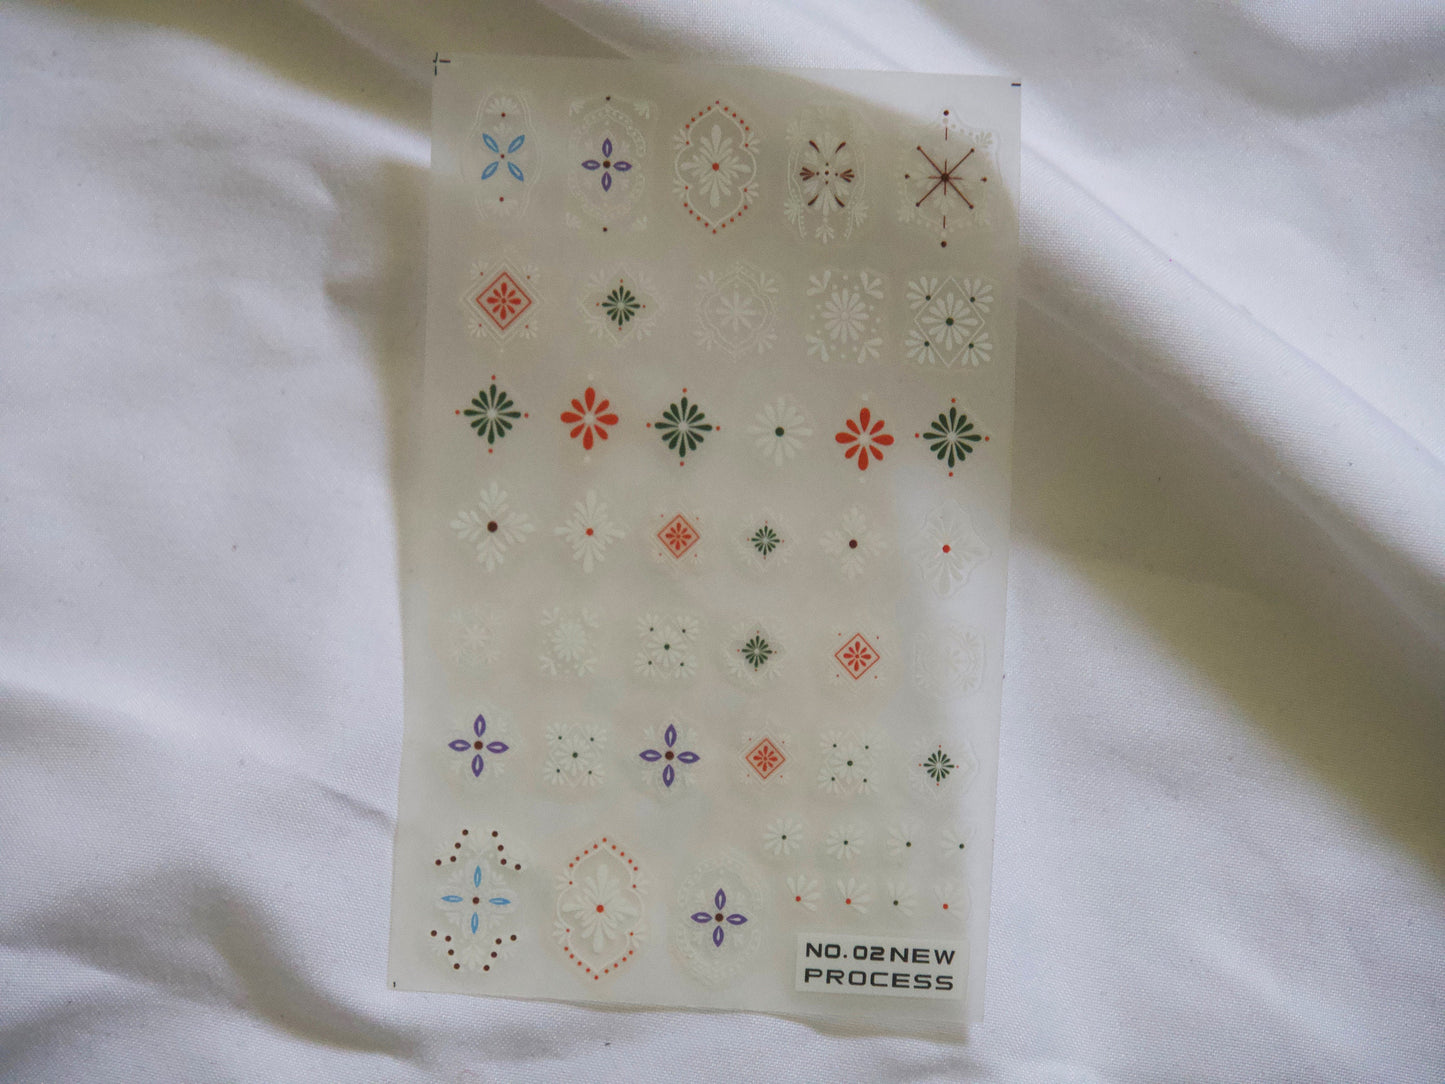 Henna White Mehndi FlowerTemplate Sticker for nail art